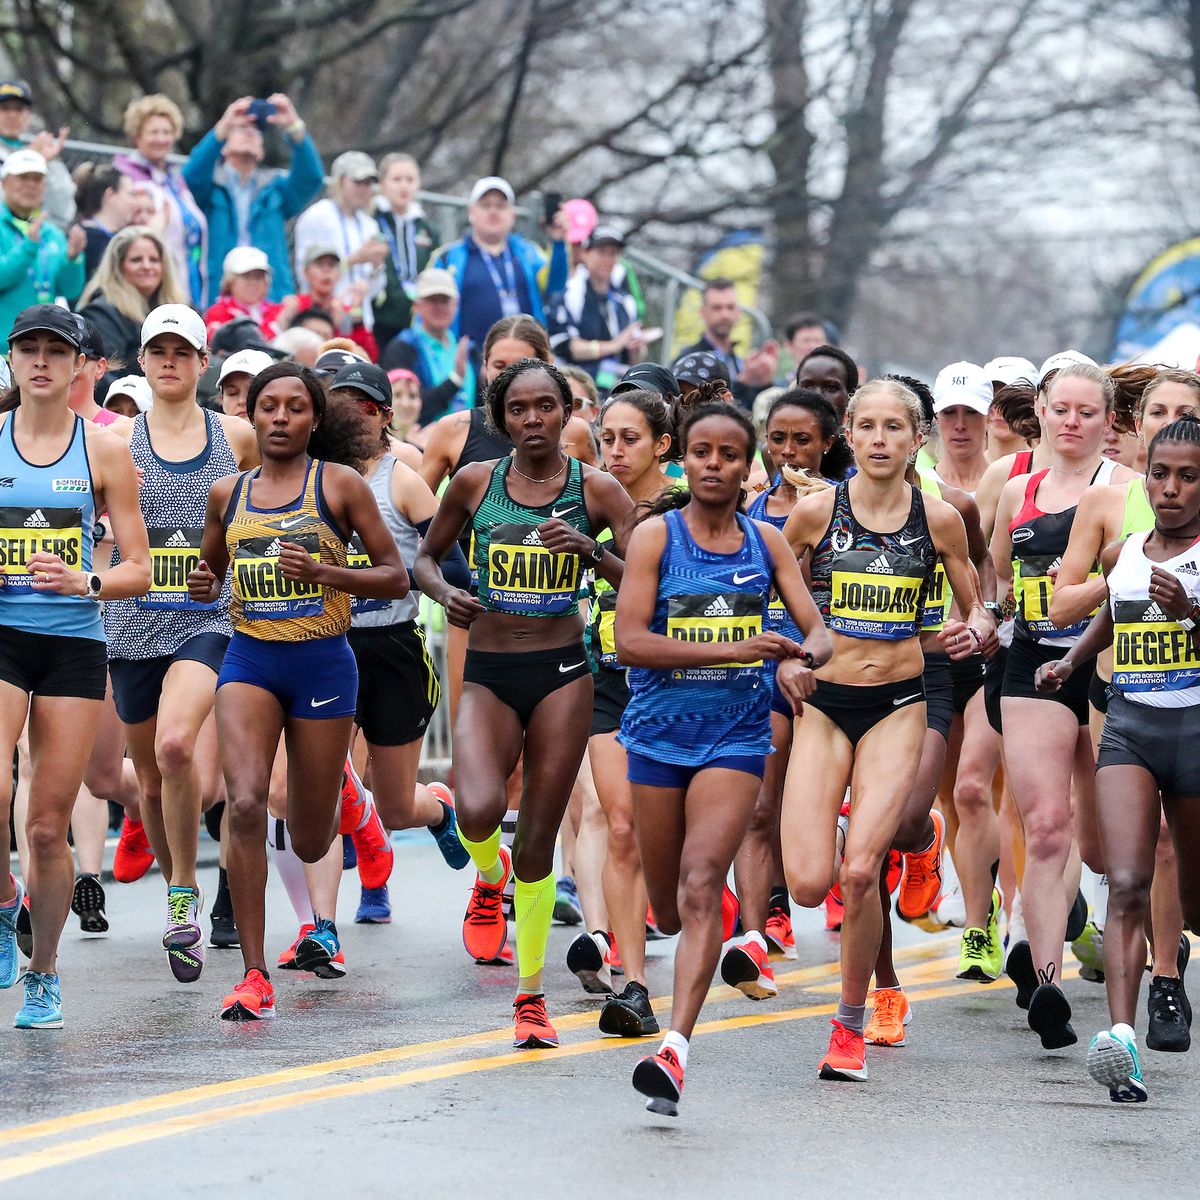 utilizar lanzamiento detective Boston Marathon Start Times - Changes to Starting Times for Boston Marathon